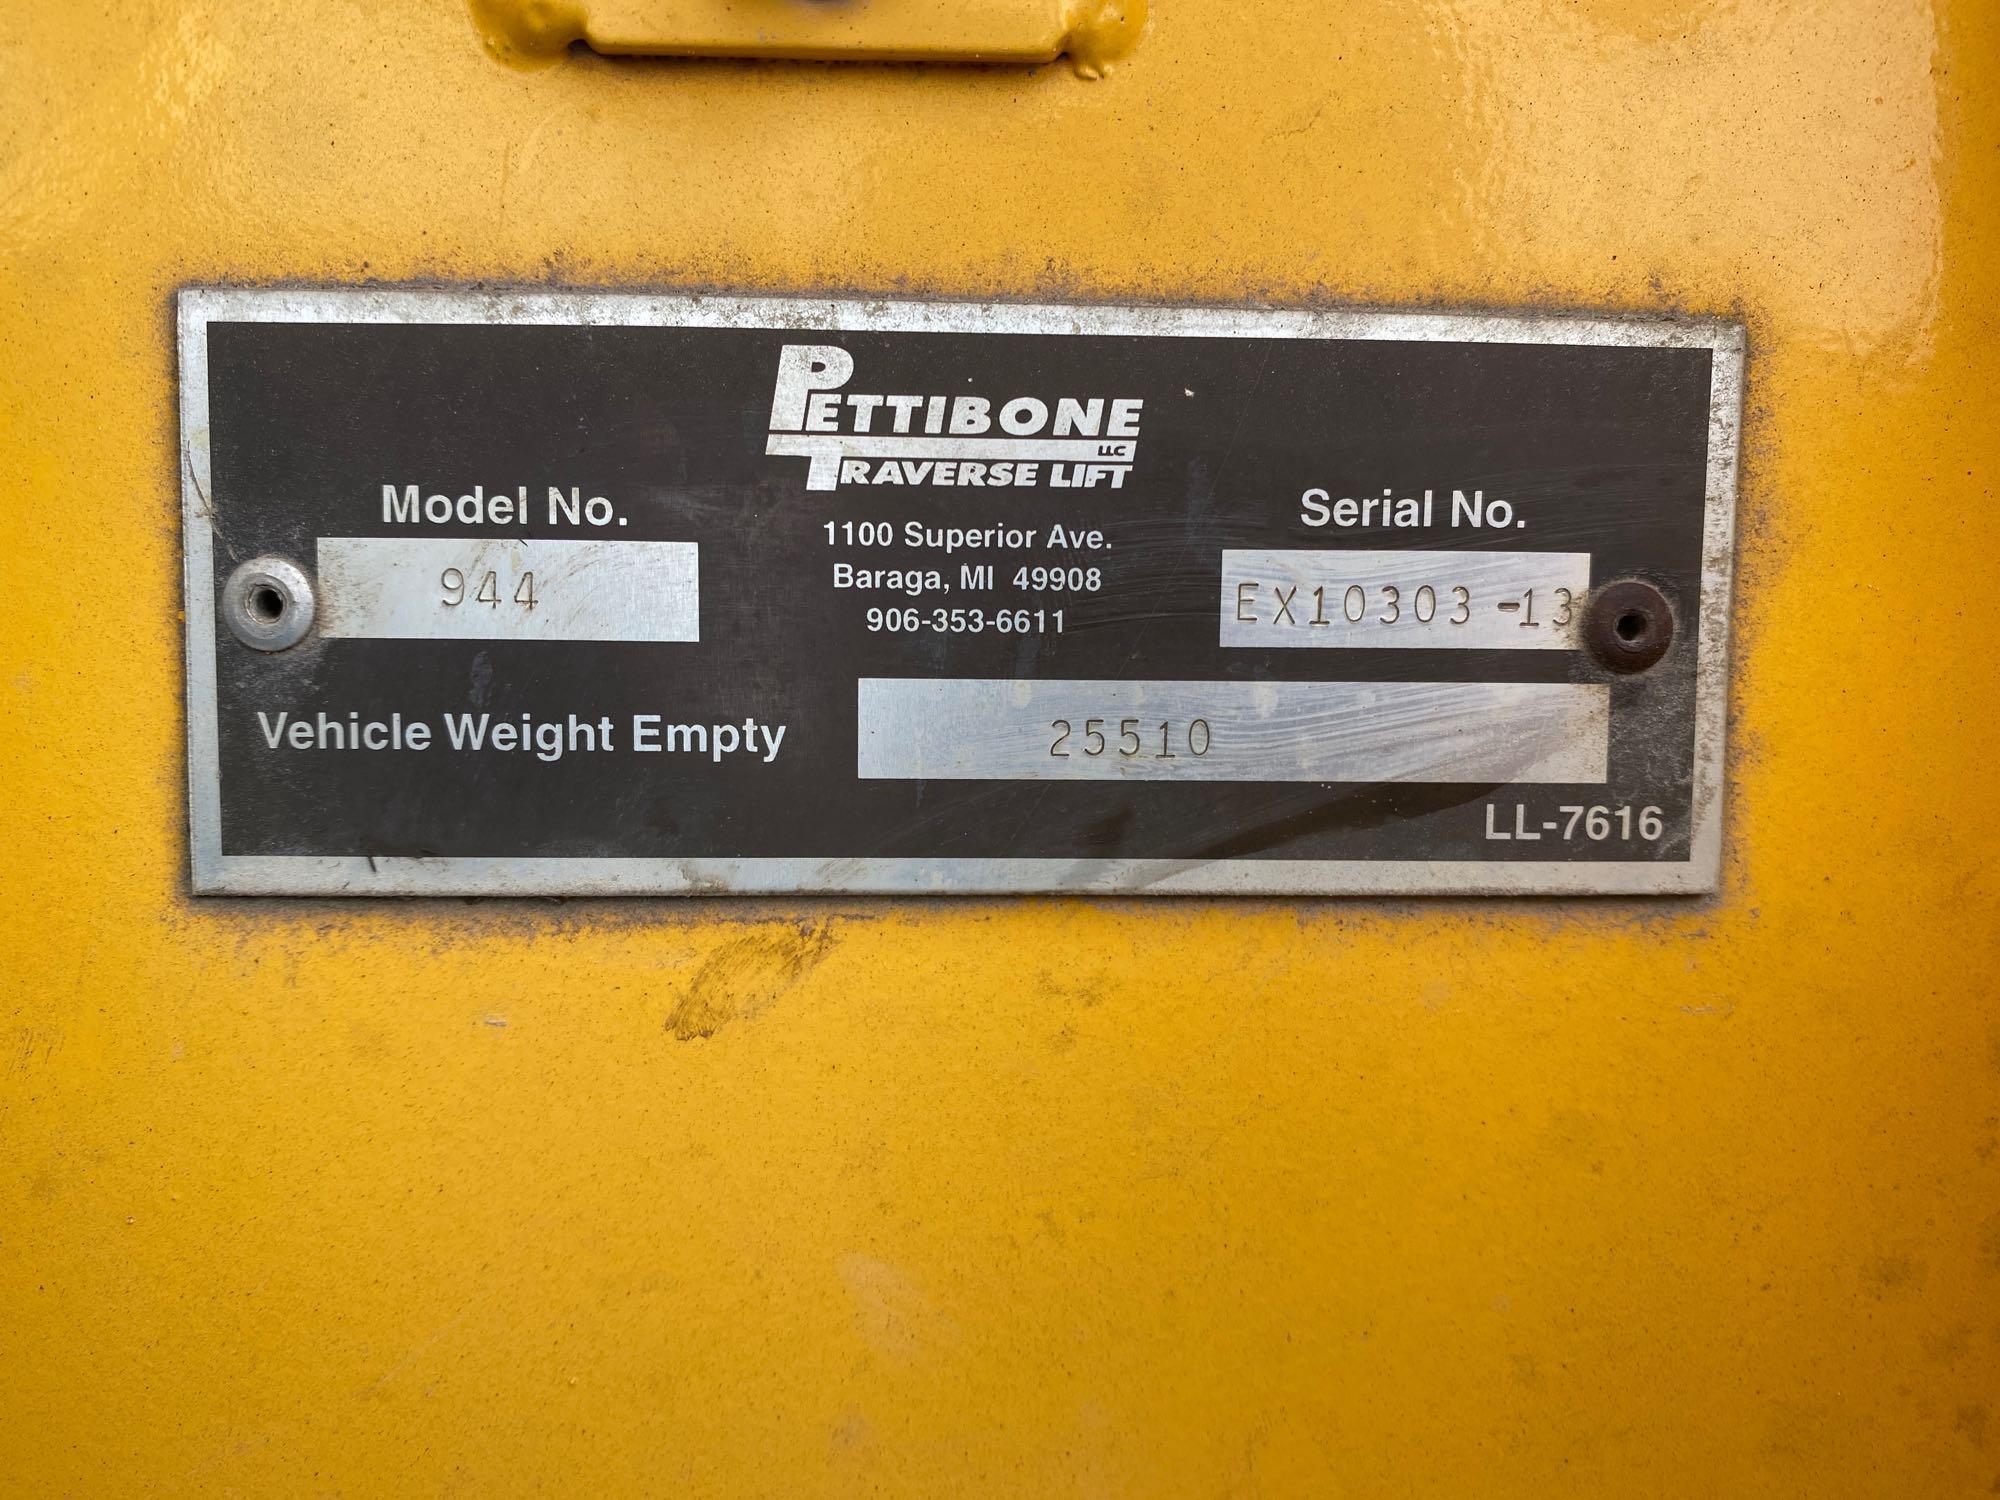 2013 Pettibone 944 9000 lb 4x4x4 Telescopic Forklift